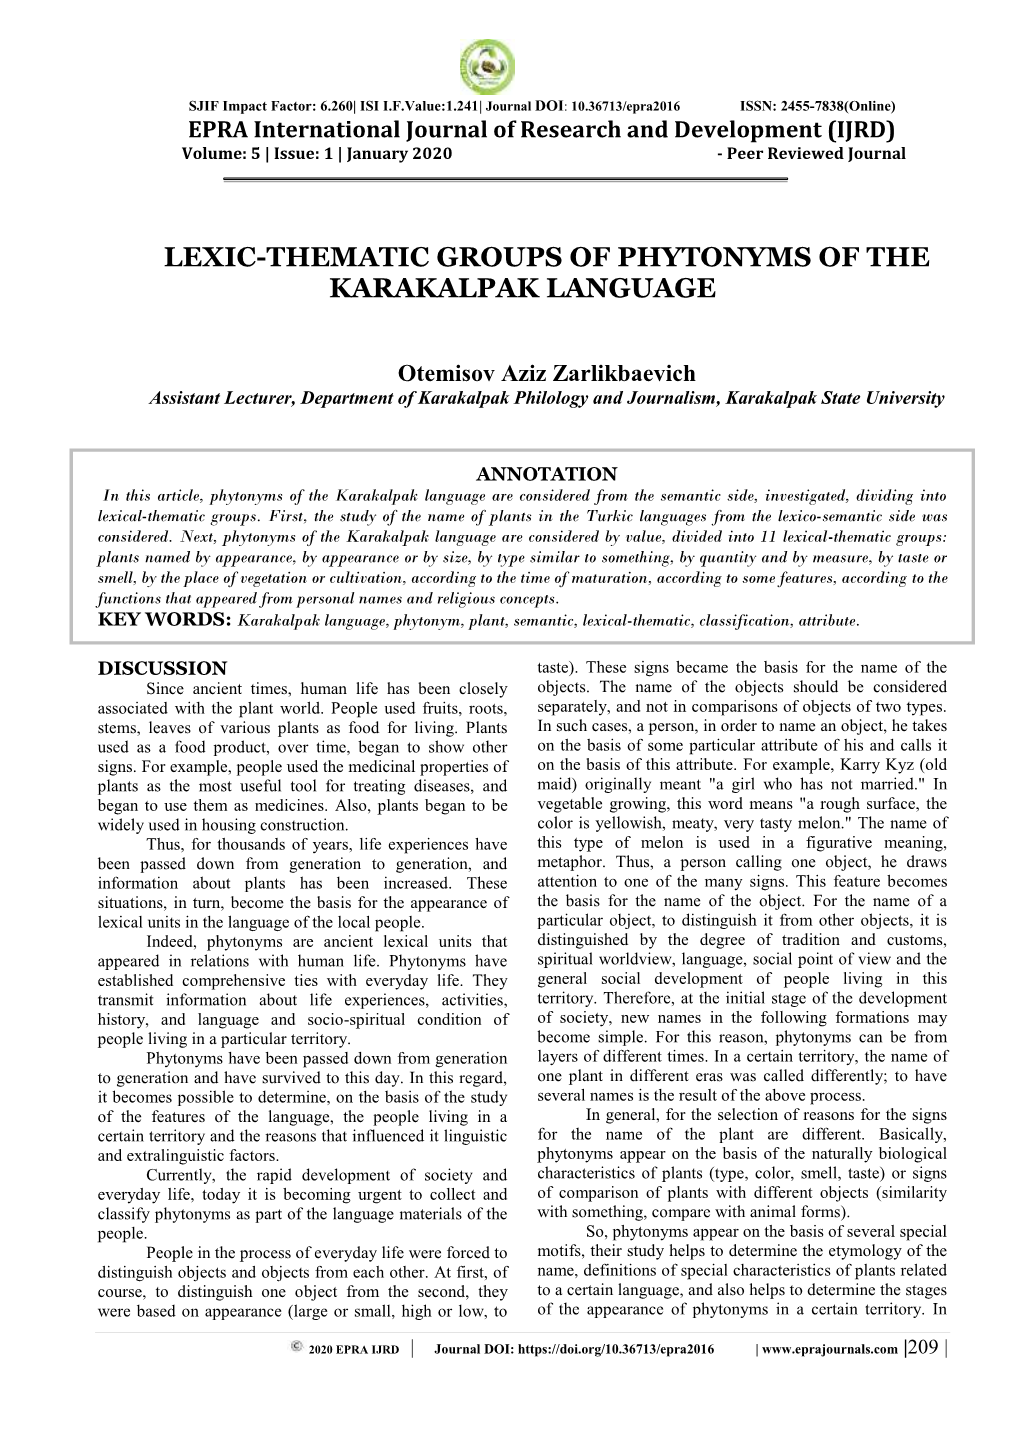 Lexic-Thematic Groups of Phytonyms of the Karakalpak Language